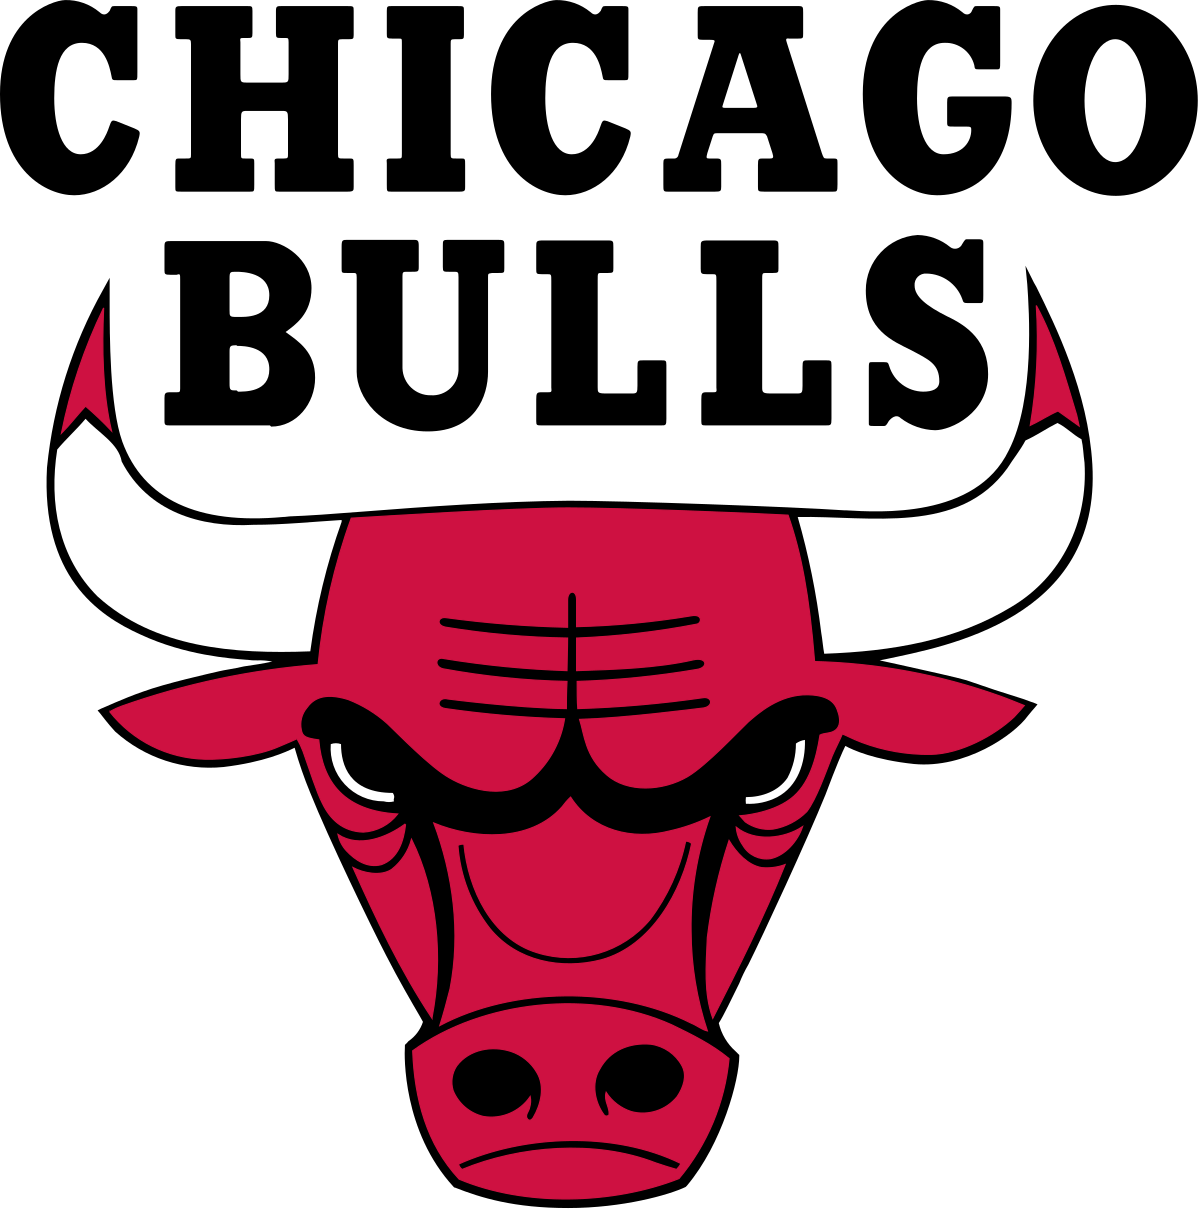 1200px-Chicago_Bulls_logo.svg.png